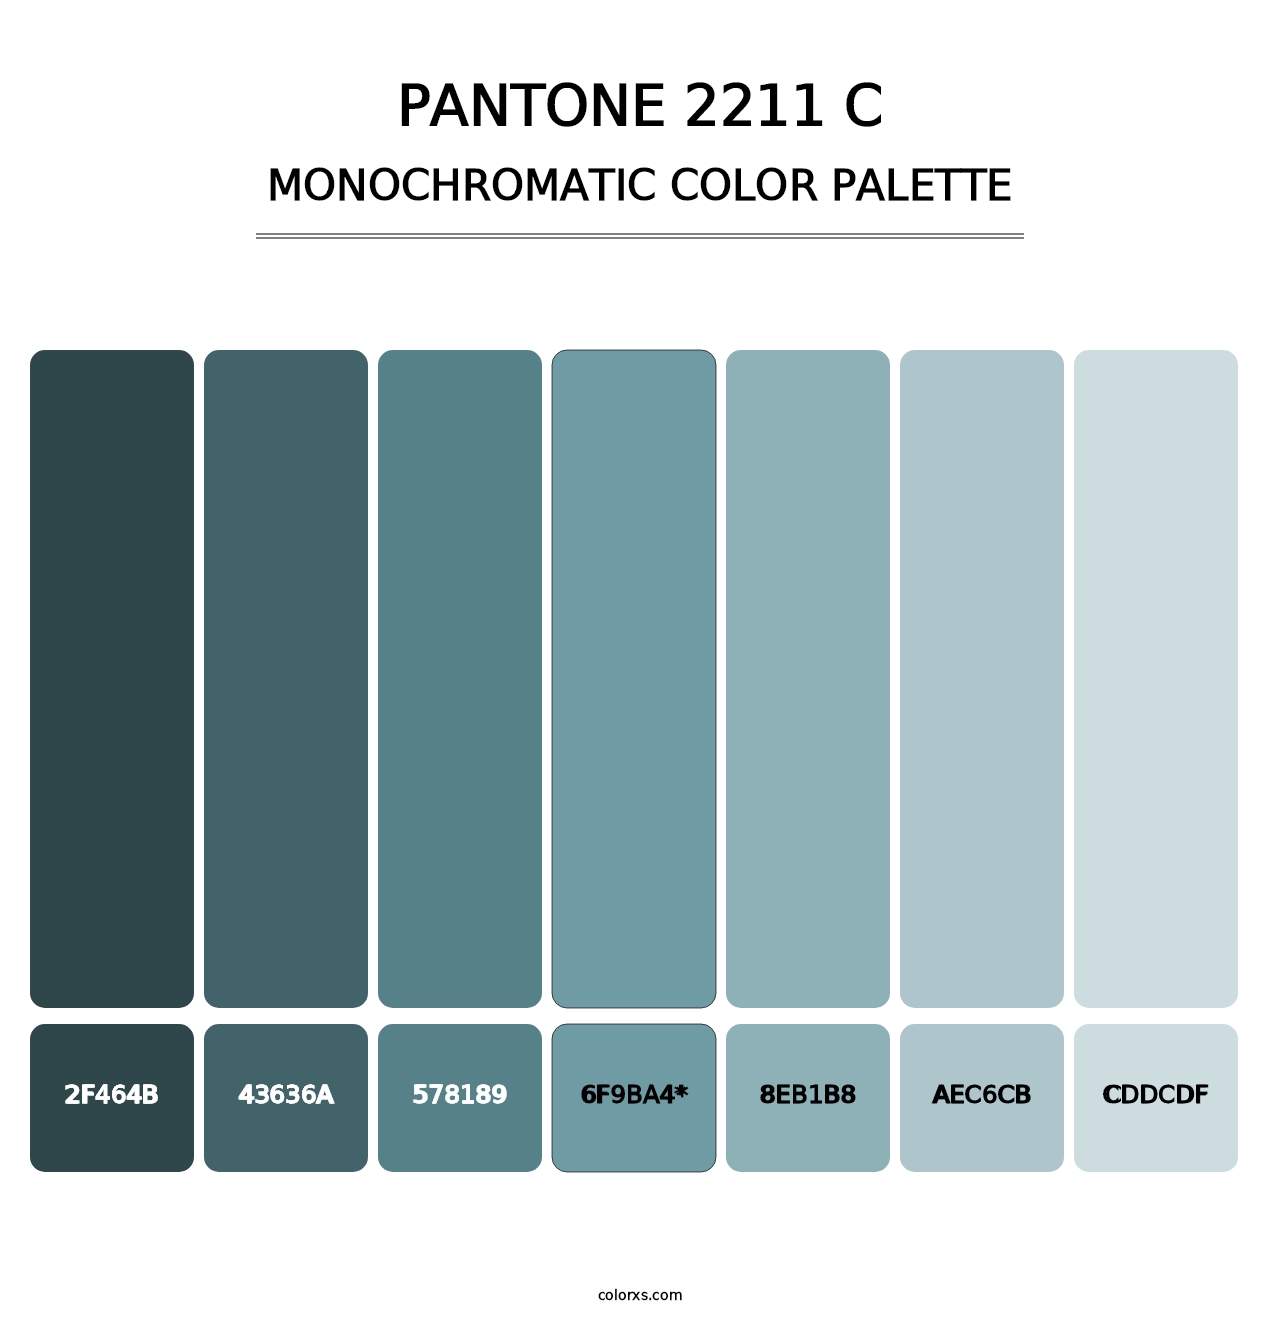 PANTONE 2211 C - Monochromatic Color Palette